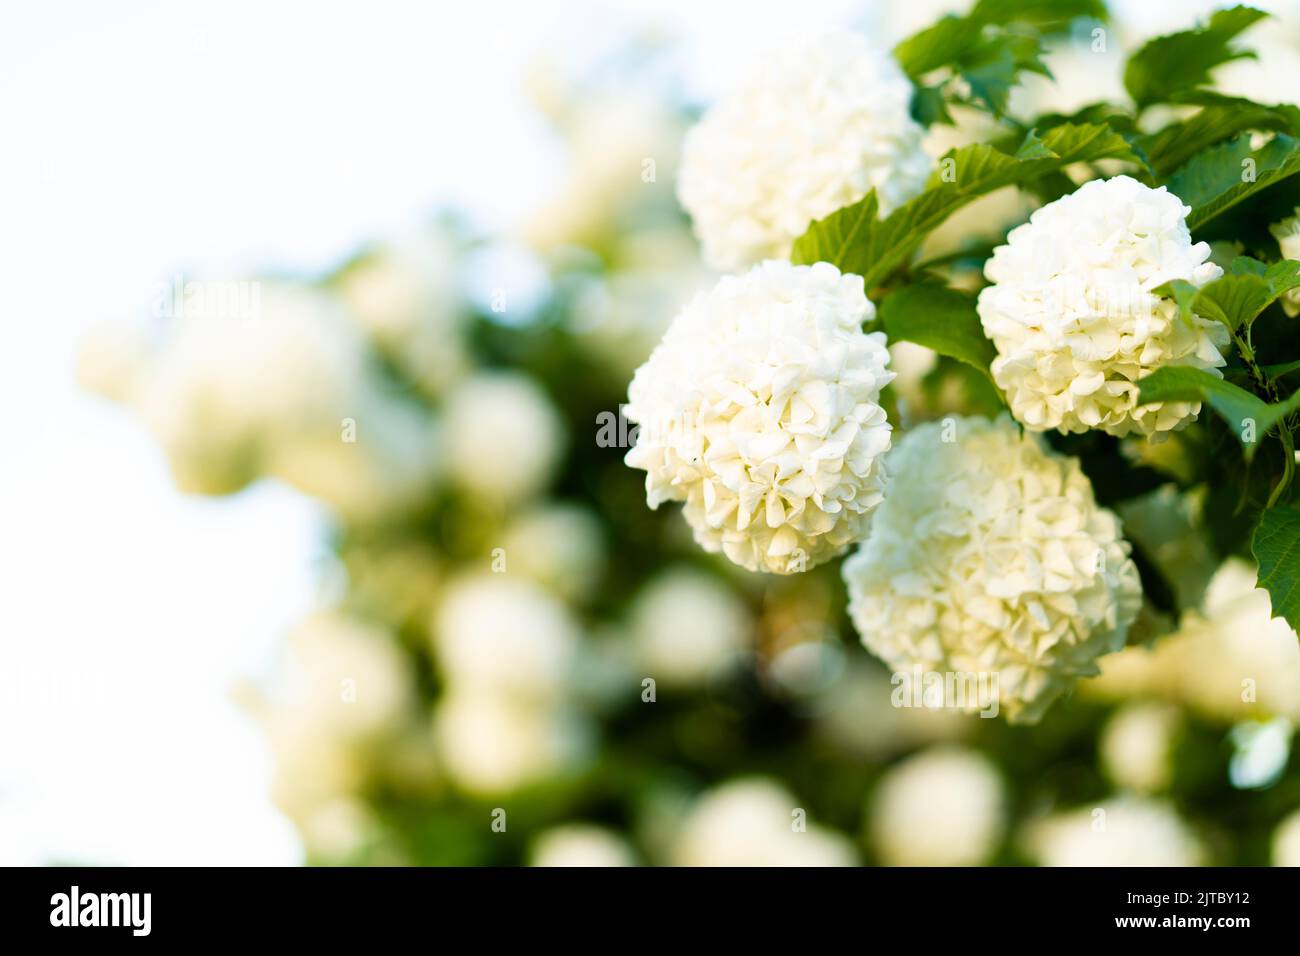 Blühende Hortensien von weißer Farbe. Üppig blühend, ein toller Hintergrund für Ihr Design. Wacholderrose (viburnum opulus, viburnum Boul de Neige) im Frühlingsgarten. Stockfoto